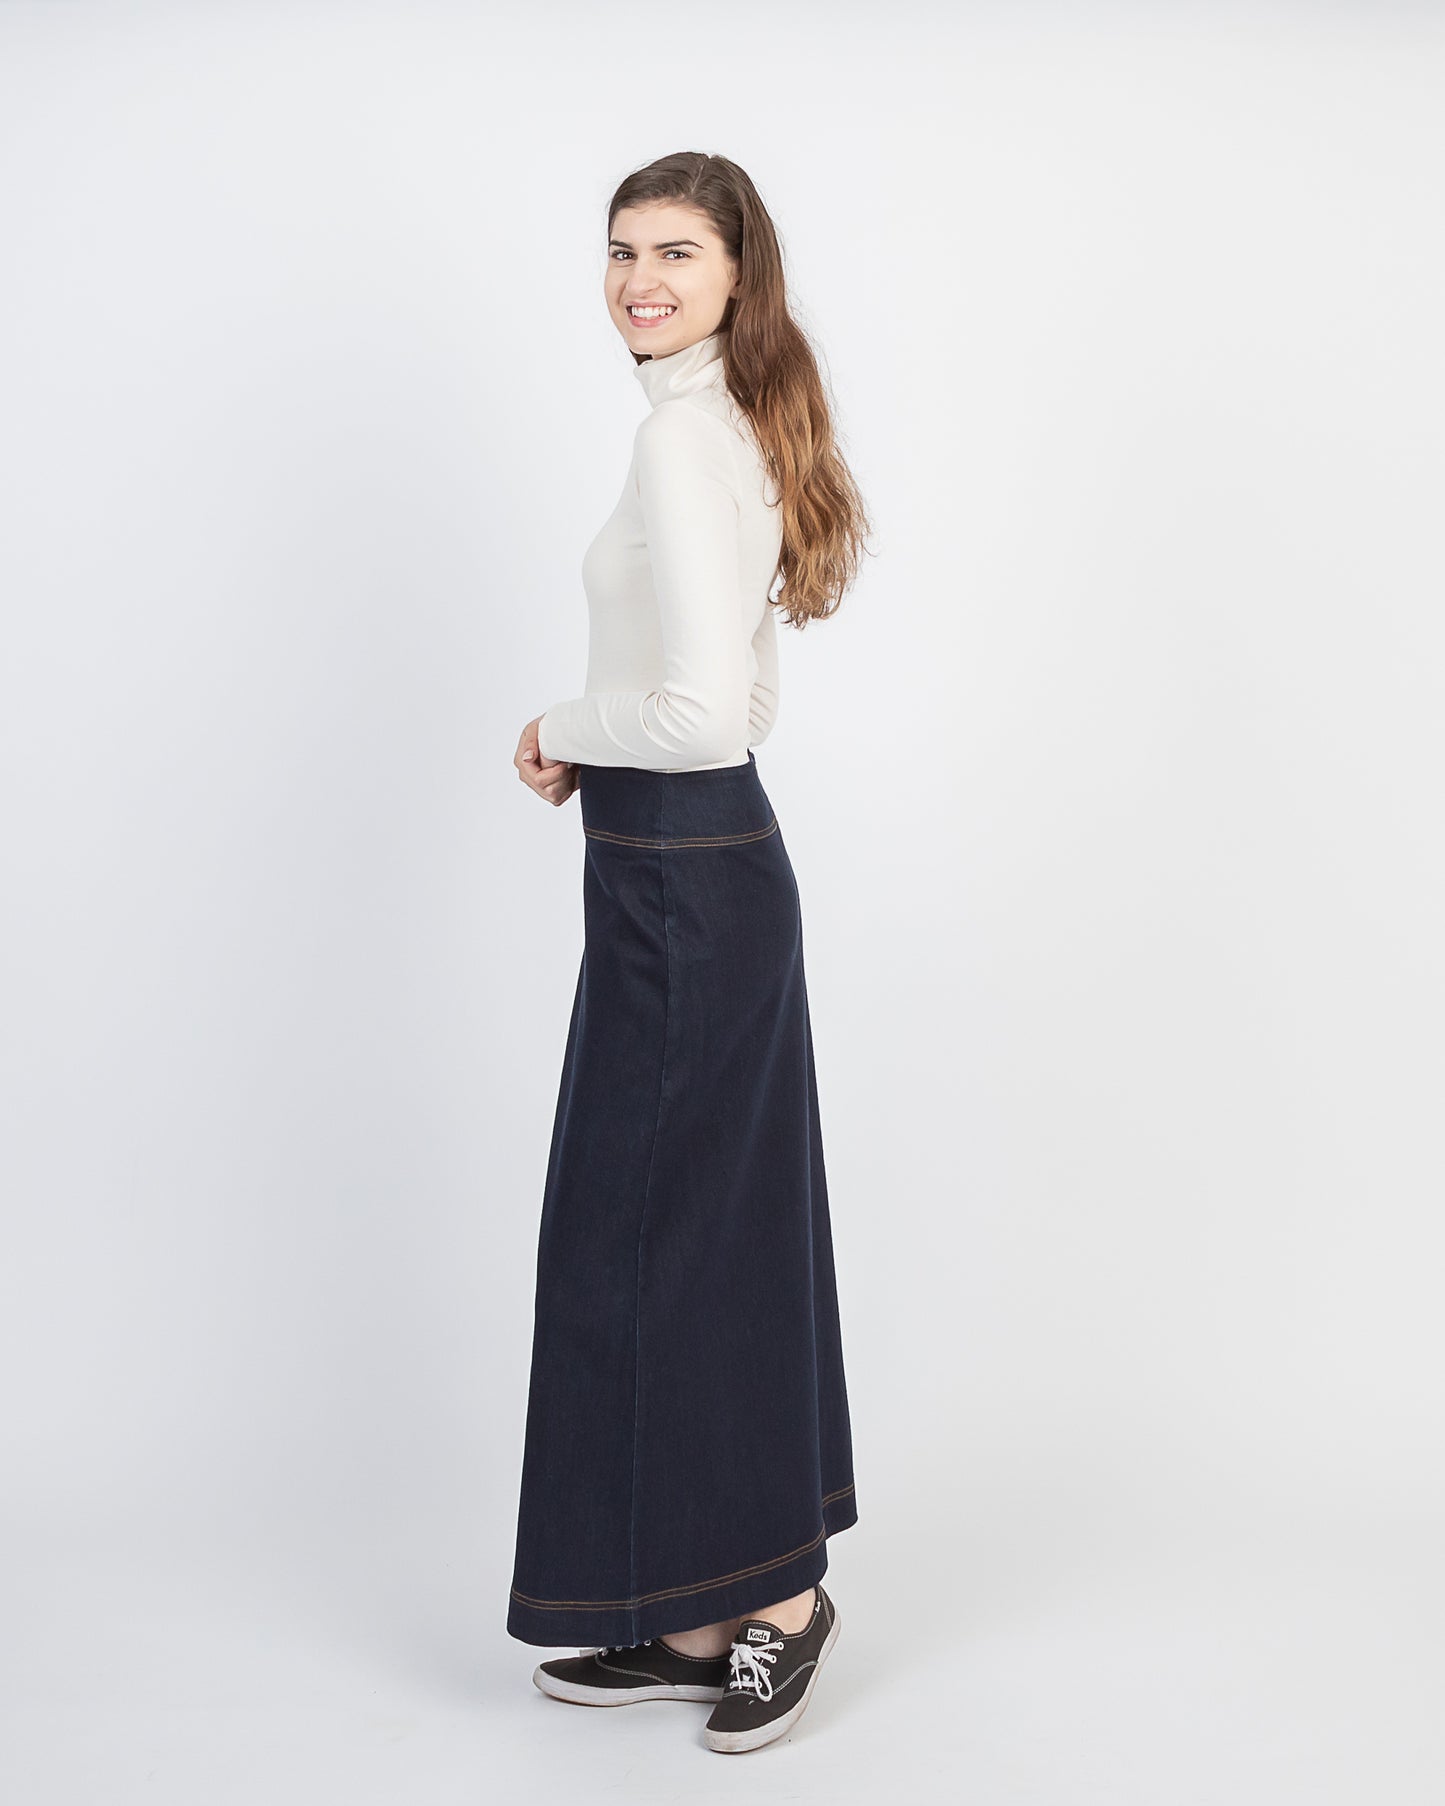 Long denim skirt on Model from NewCreation Apparel